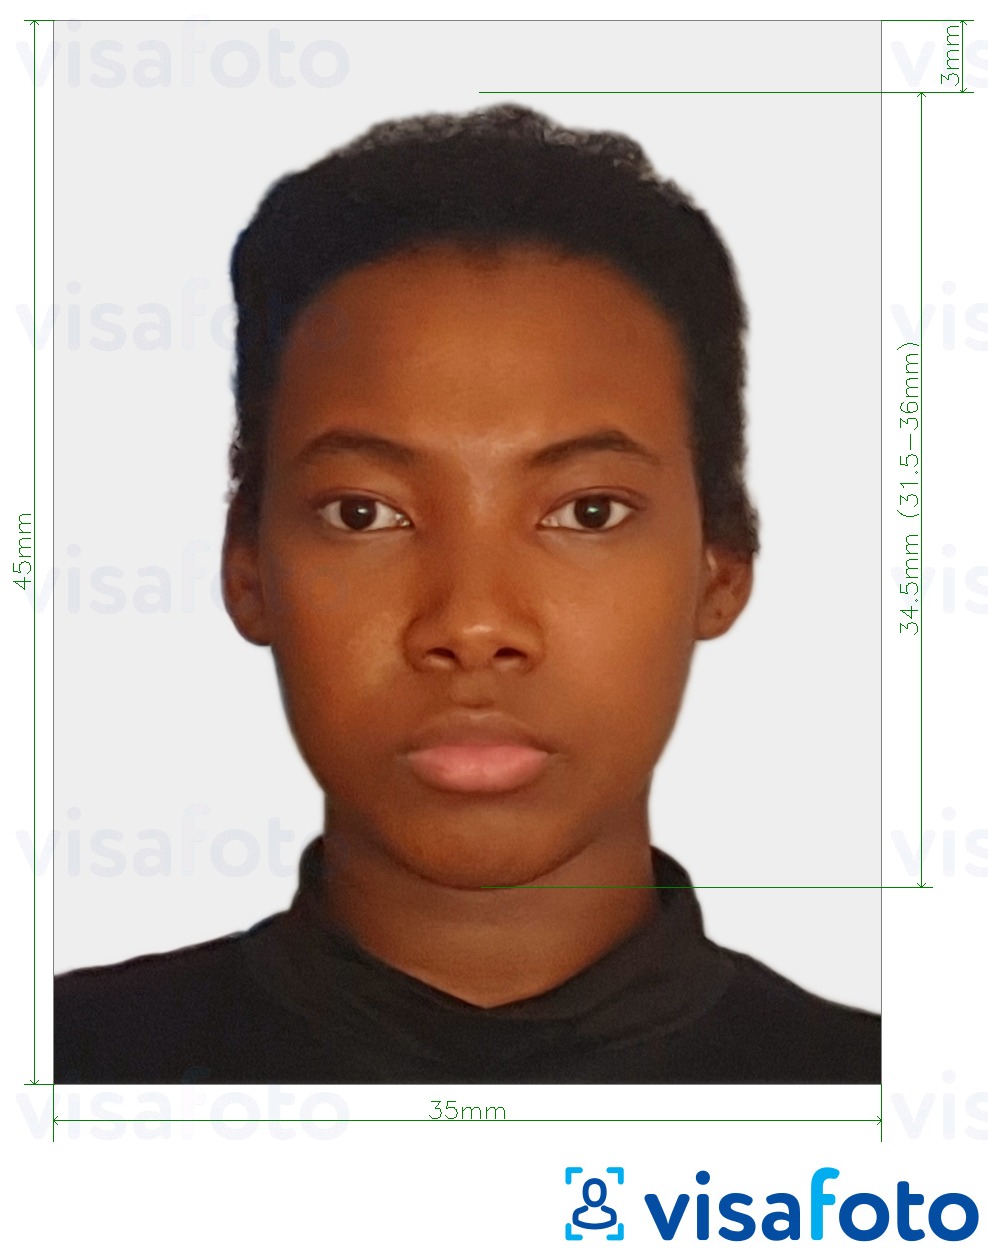 Образец фотографии для Того виза 4.5x3.5 см (45x35 мм) с точными размерами